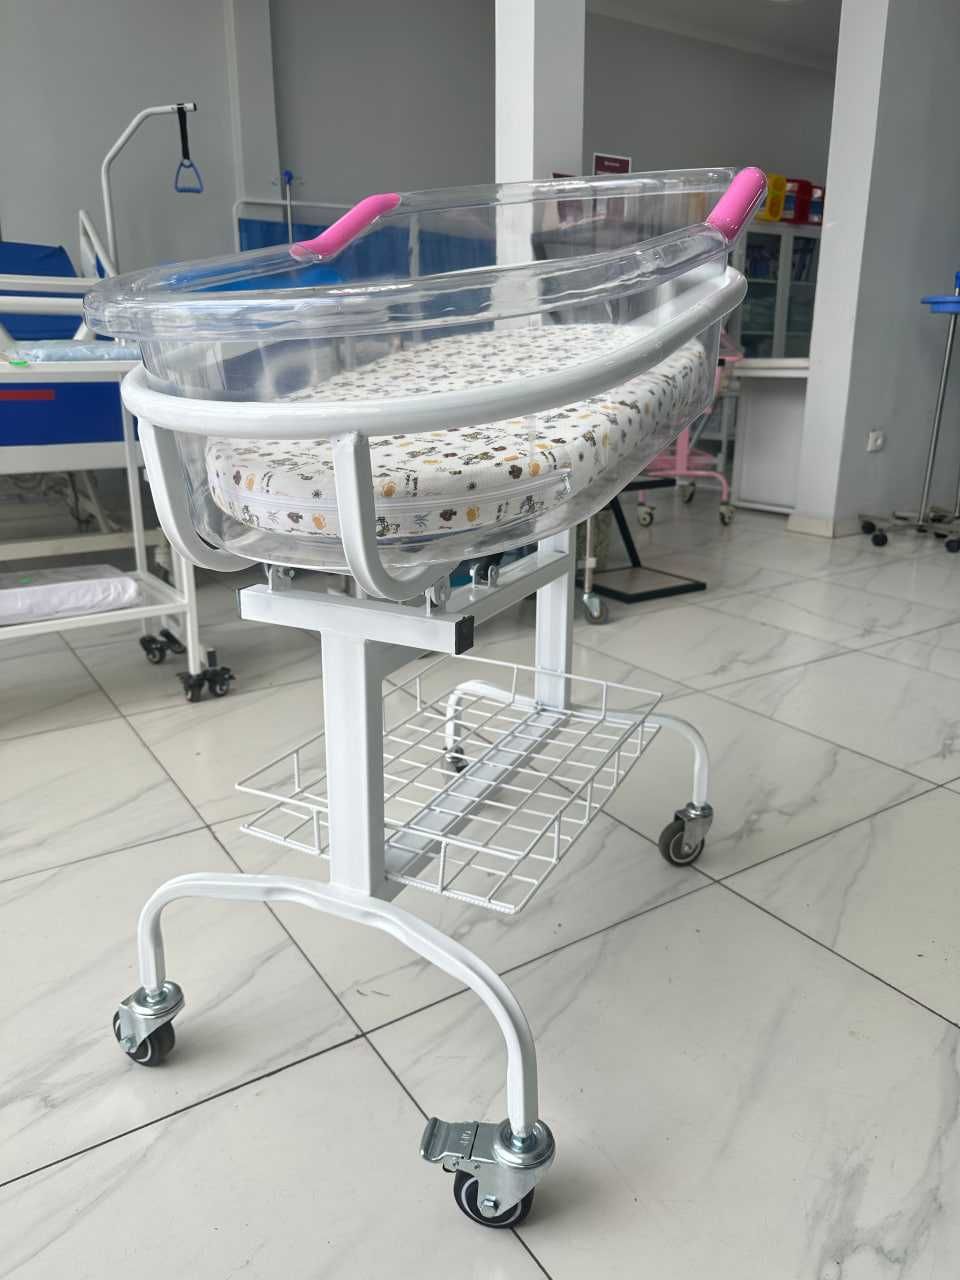 Кровать для новорождённых